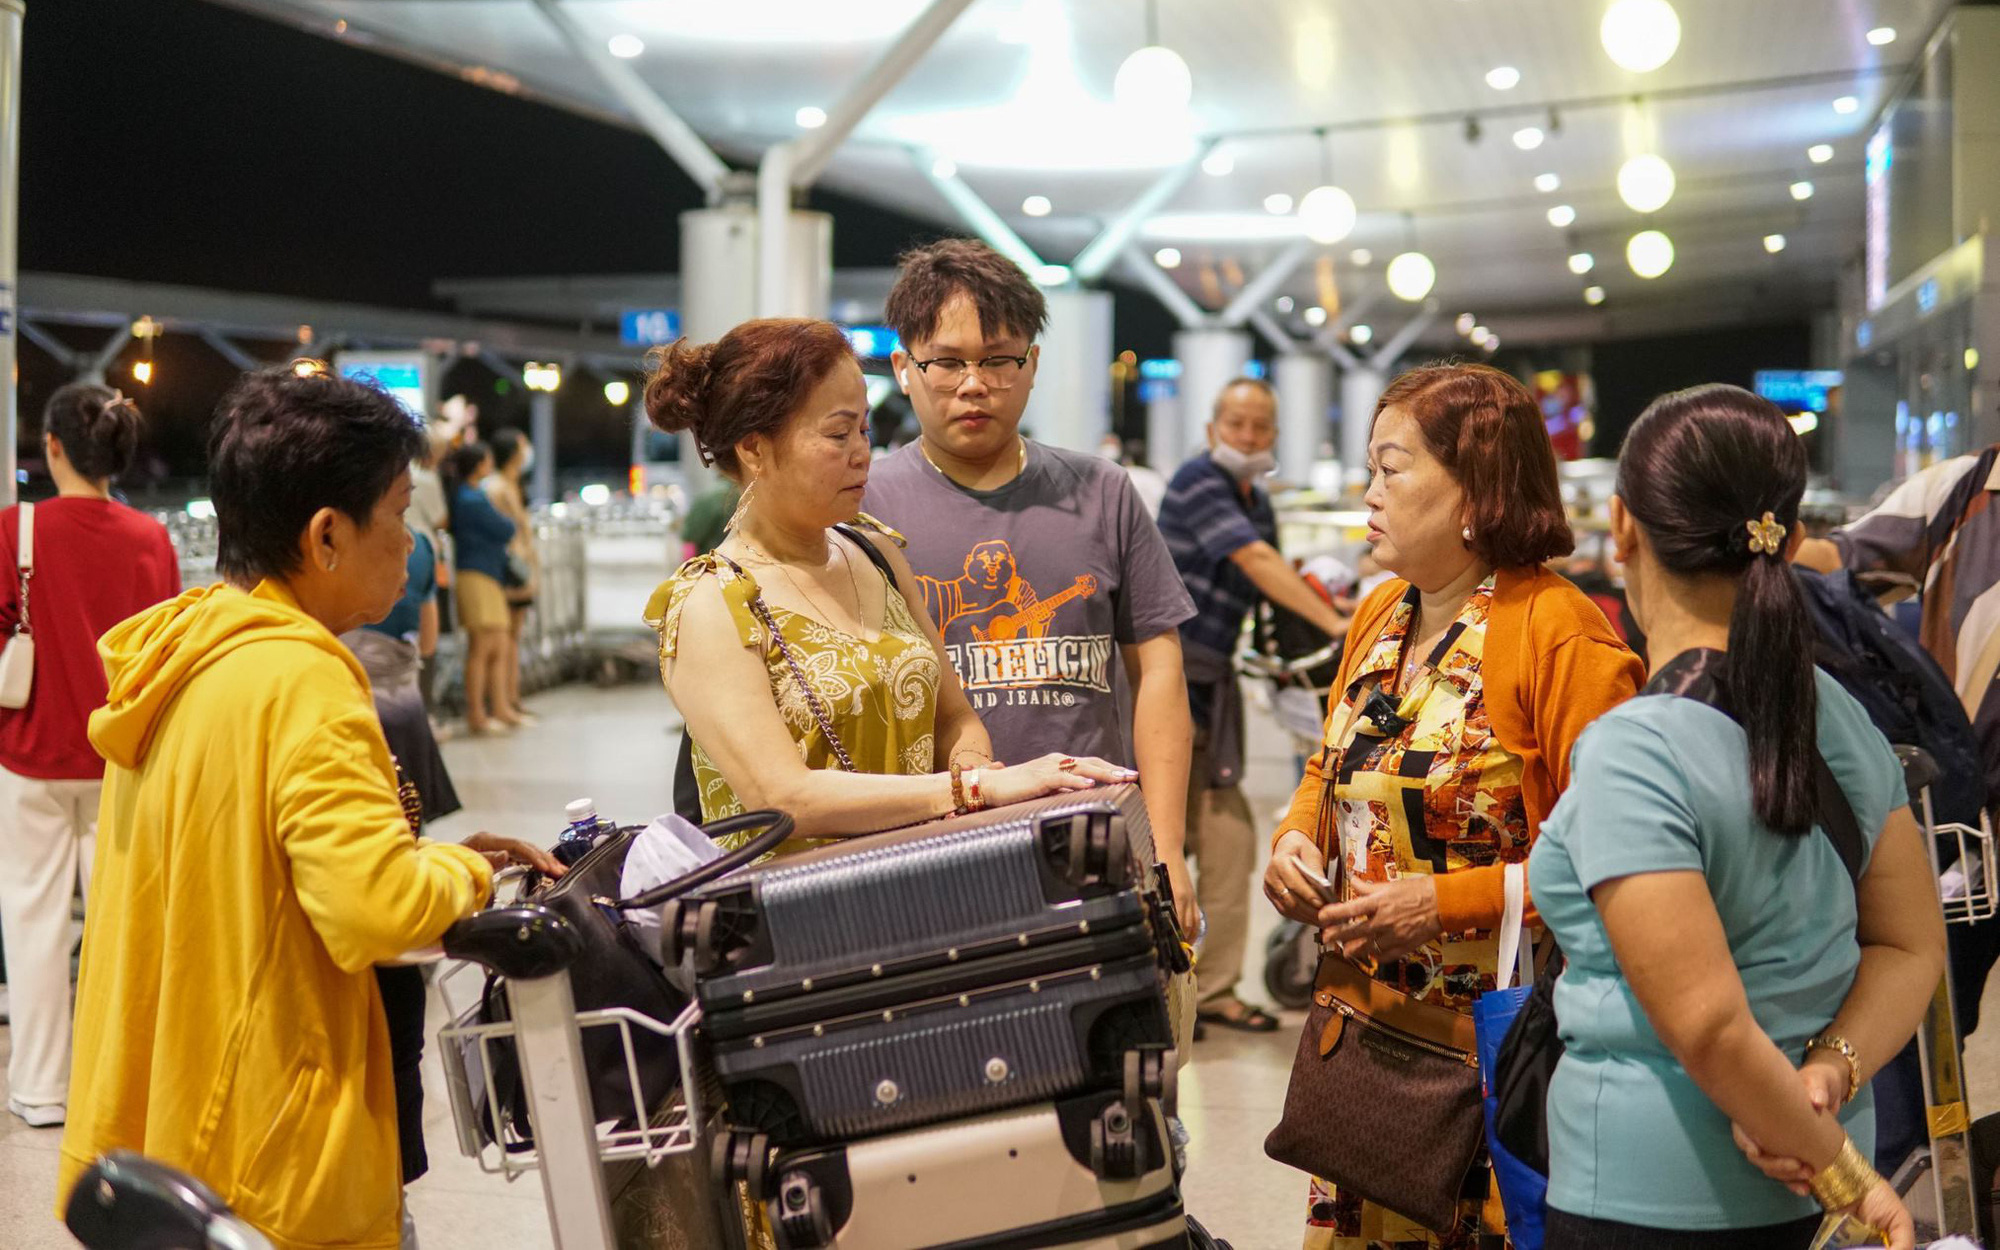 Người TP.HCM chi hơn 430 tỉ du lịch nước ngoài dịp Tết